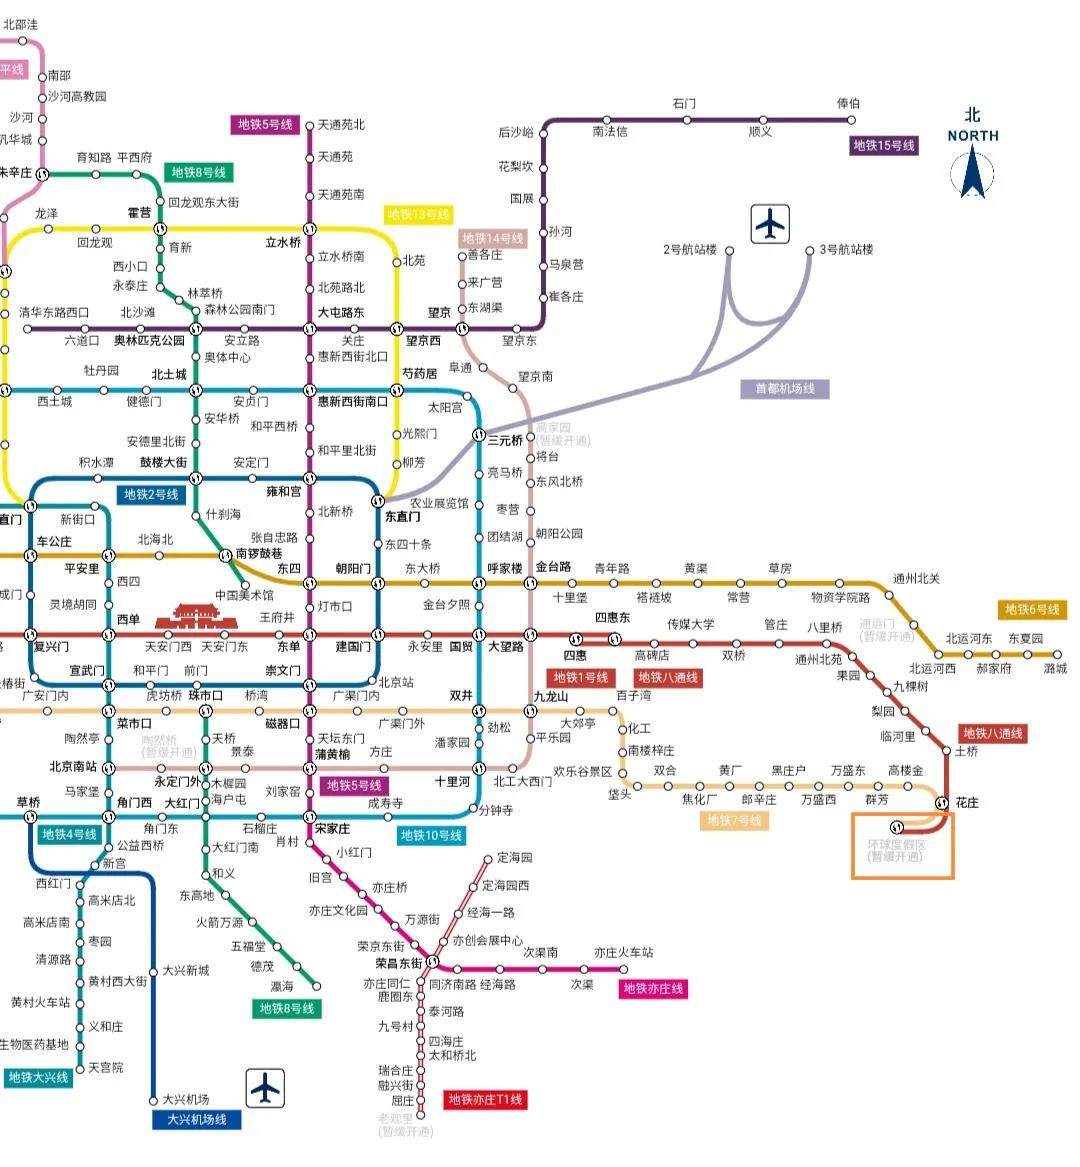 从北京市区有八通线和7号线两条地铁线直达环球影城,目前地铁环球度假